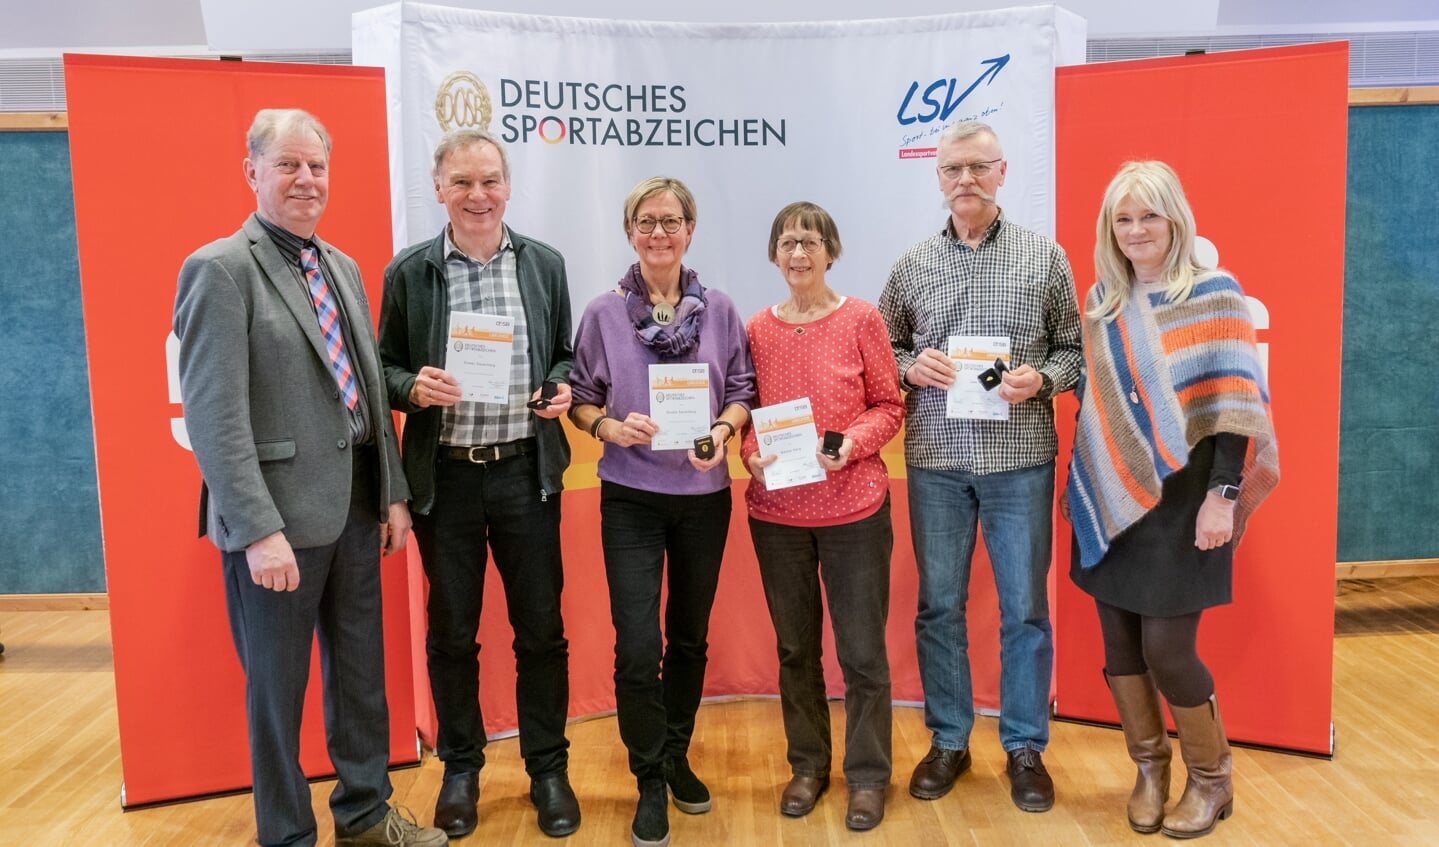 Jens Hartwig (LSV), Dieter Sauerberg, Flensborg (35), Gisela Sauerberg, Flensborg (35), Bärbel Hora, Flensborg (35), Uwe Merk, Tarp (40), og Barbara Ostmeier (LSV) Foto: 